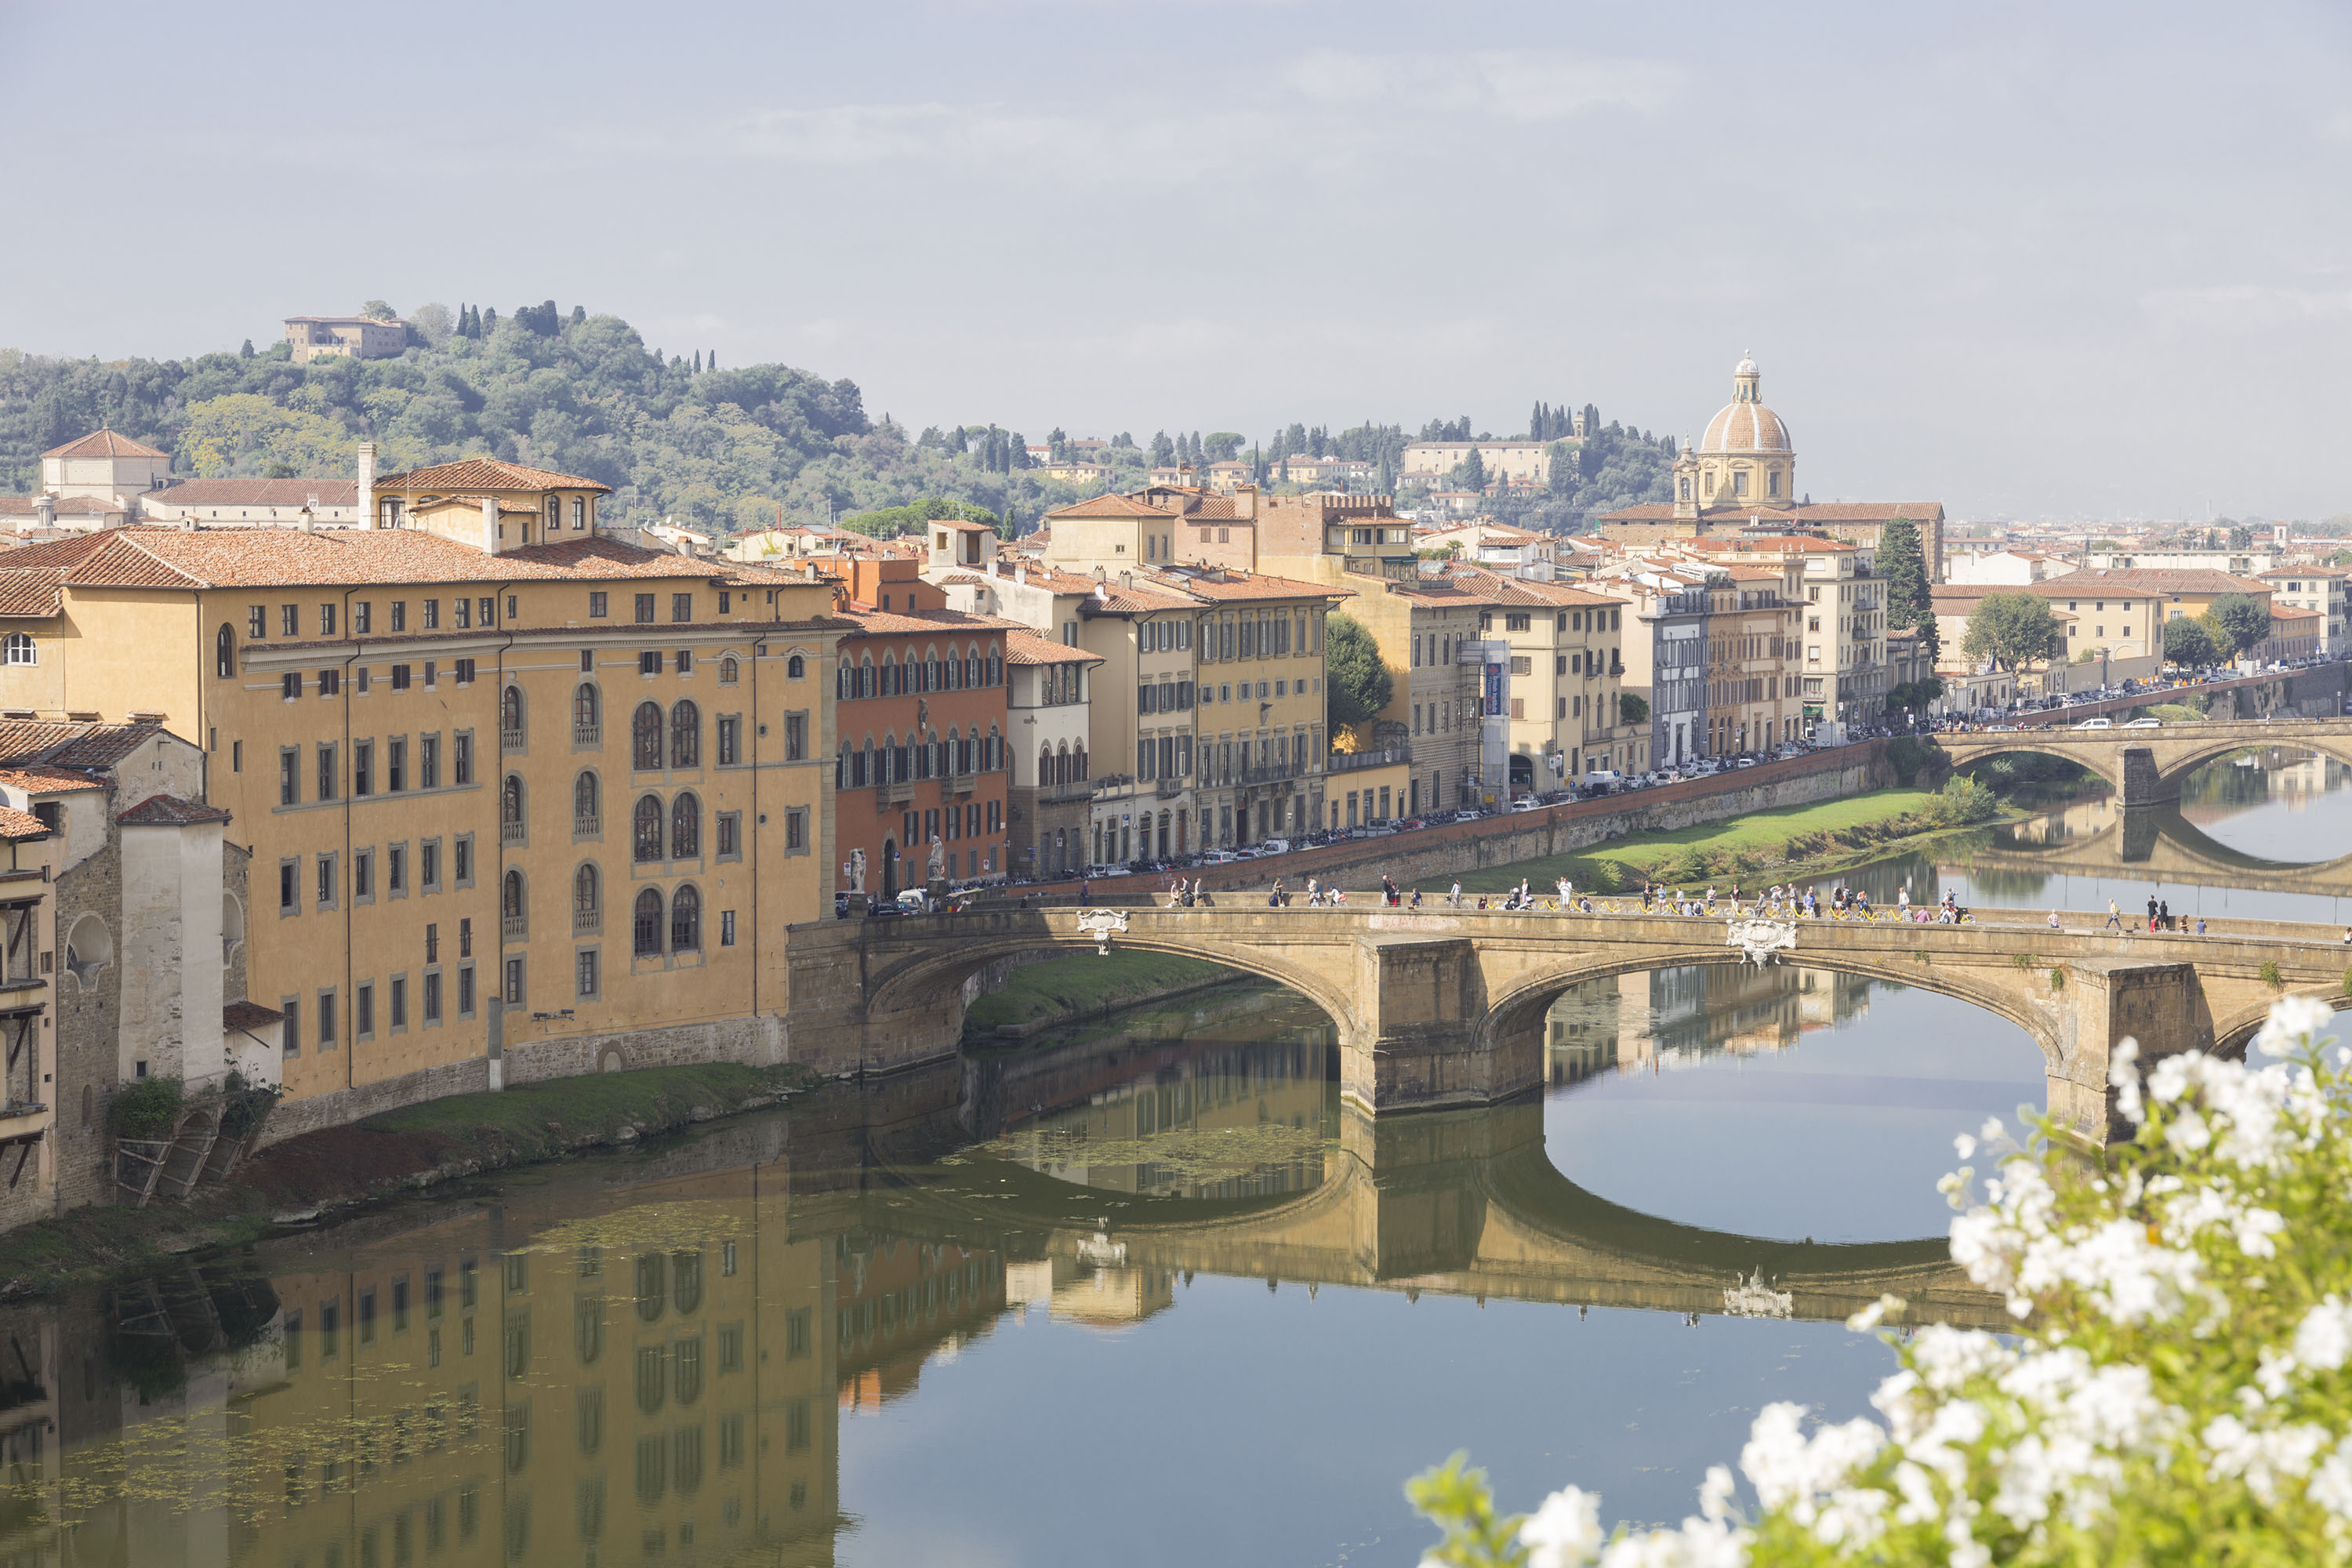 Meravigliosa Firenze, la città dell’arte che a gennaio celebra la moda